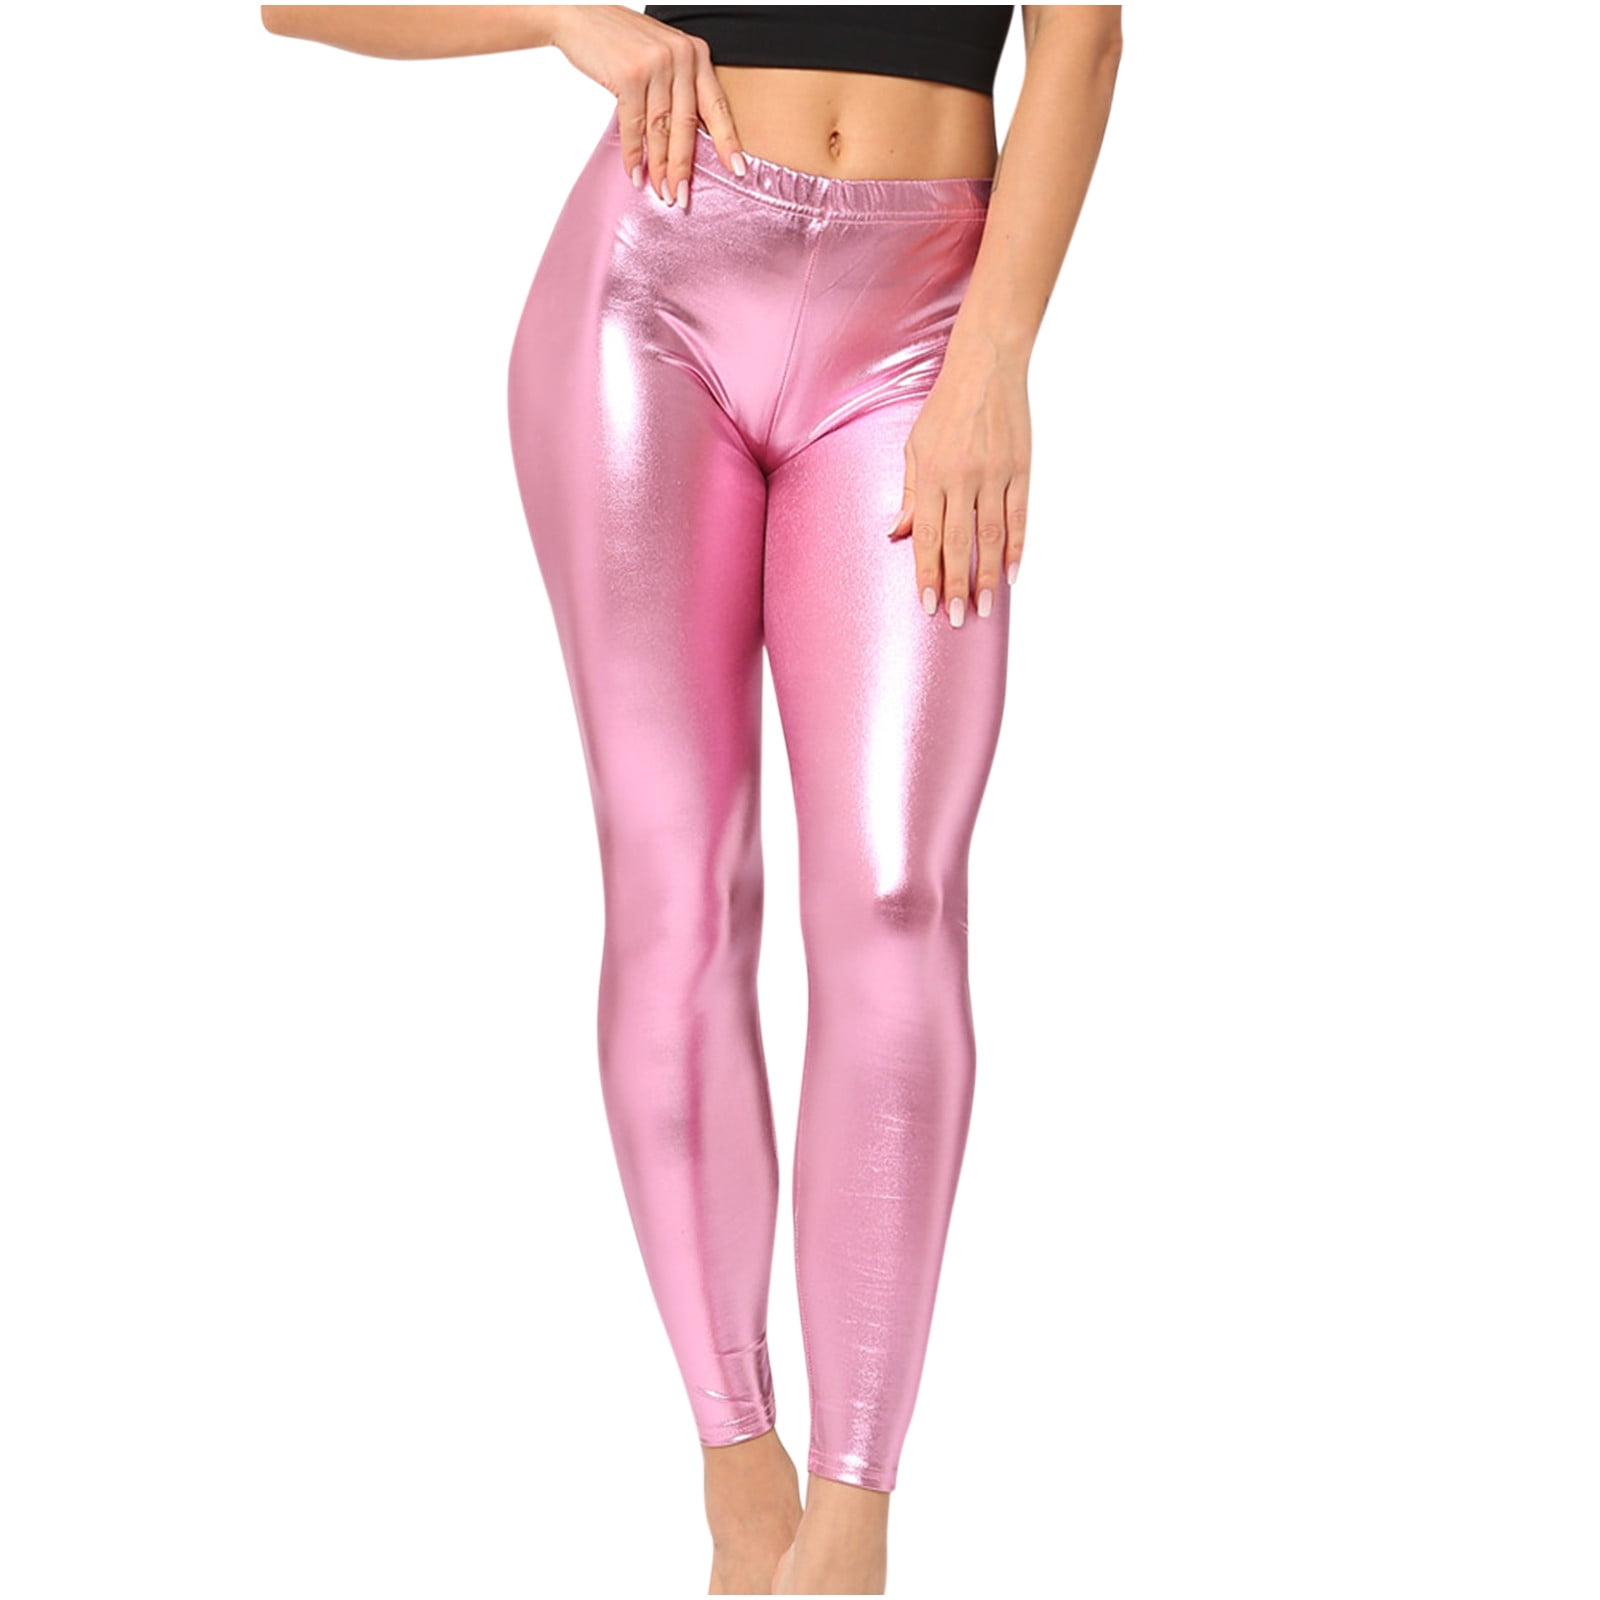 Pink Shiny Leggings for Women for sale | eBay